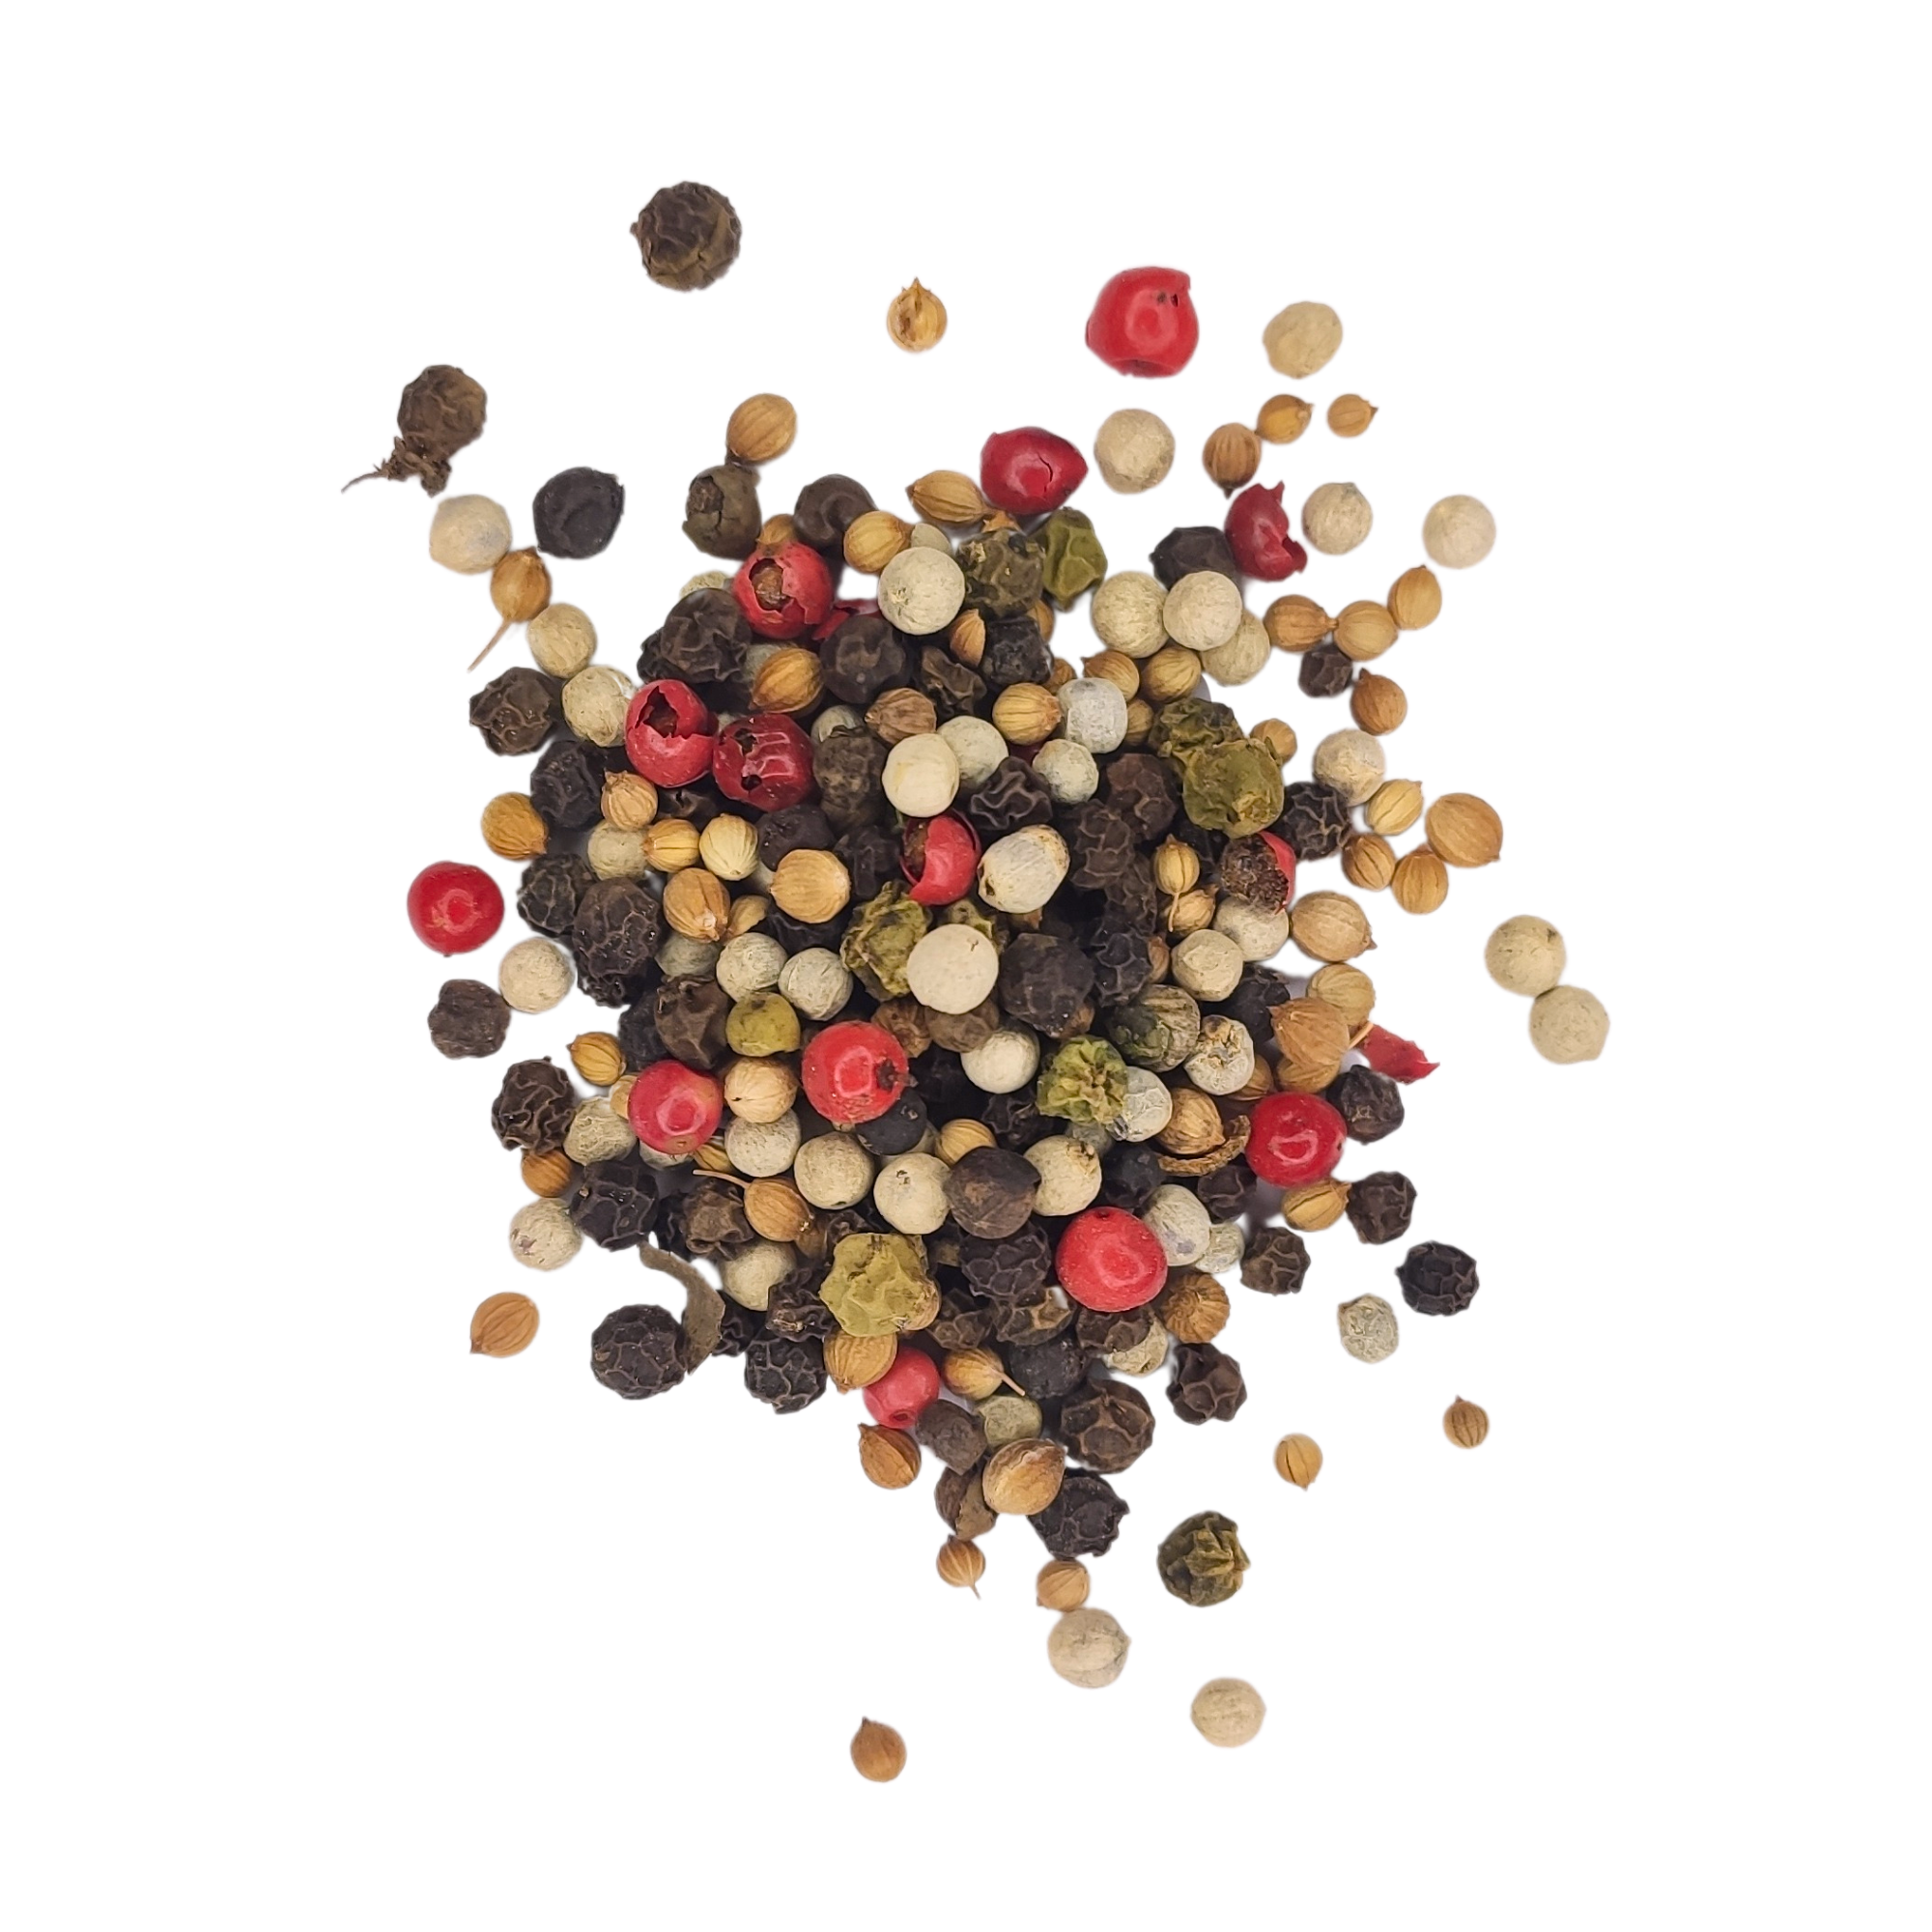 Poivre Mélange 5 baies Bio - épices en grains entiers - 200g ou kg